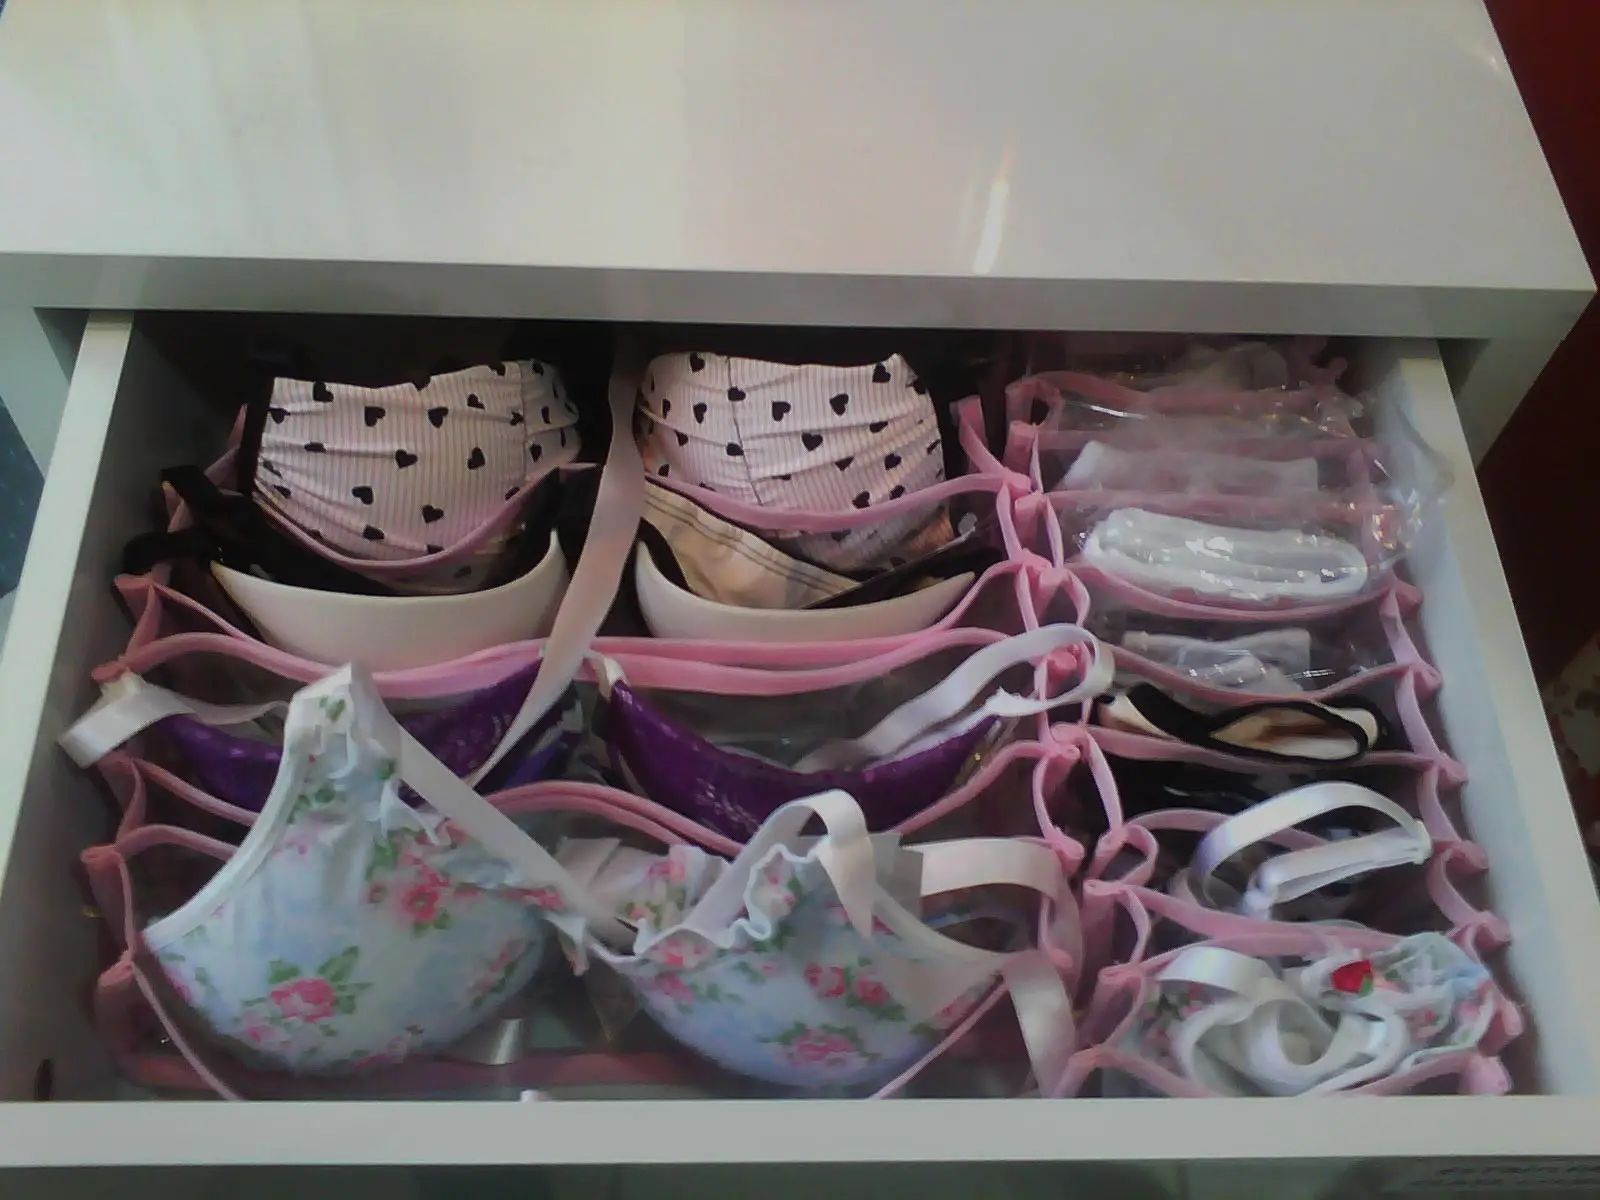 como-organizar-as-gavetas-com-lingeries-e-meias (14)